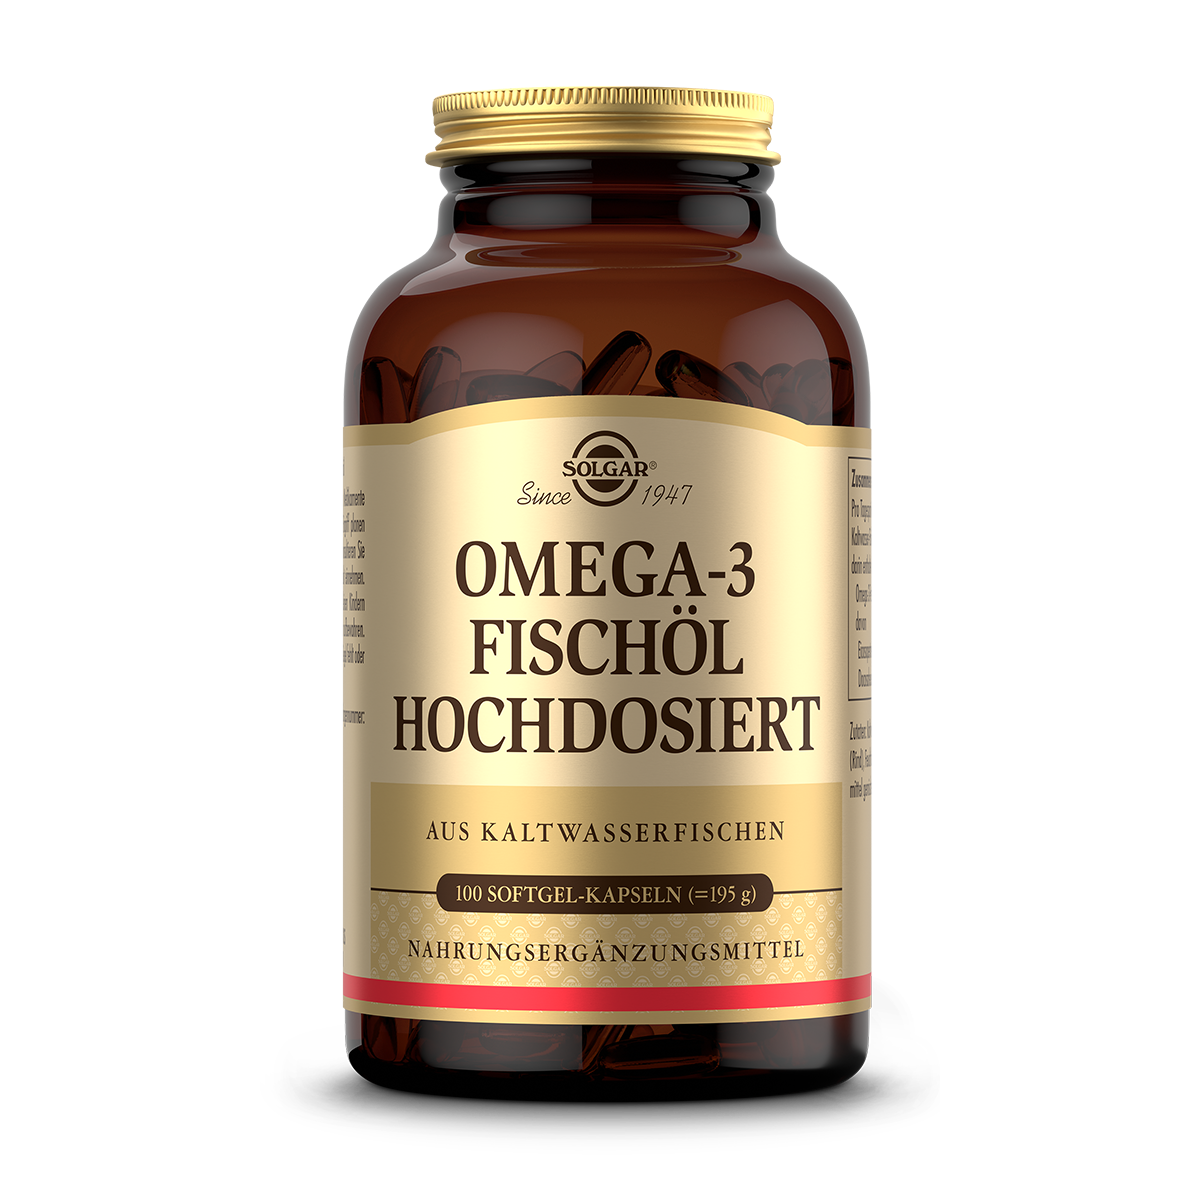 Omega-3 Fischöl hochdosiert